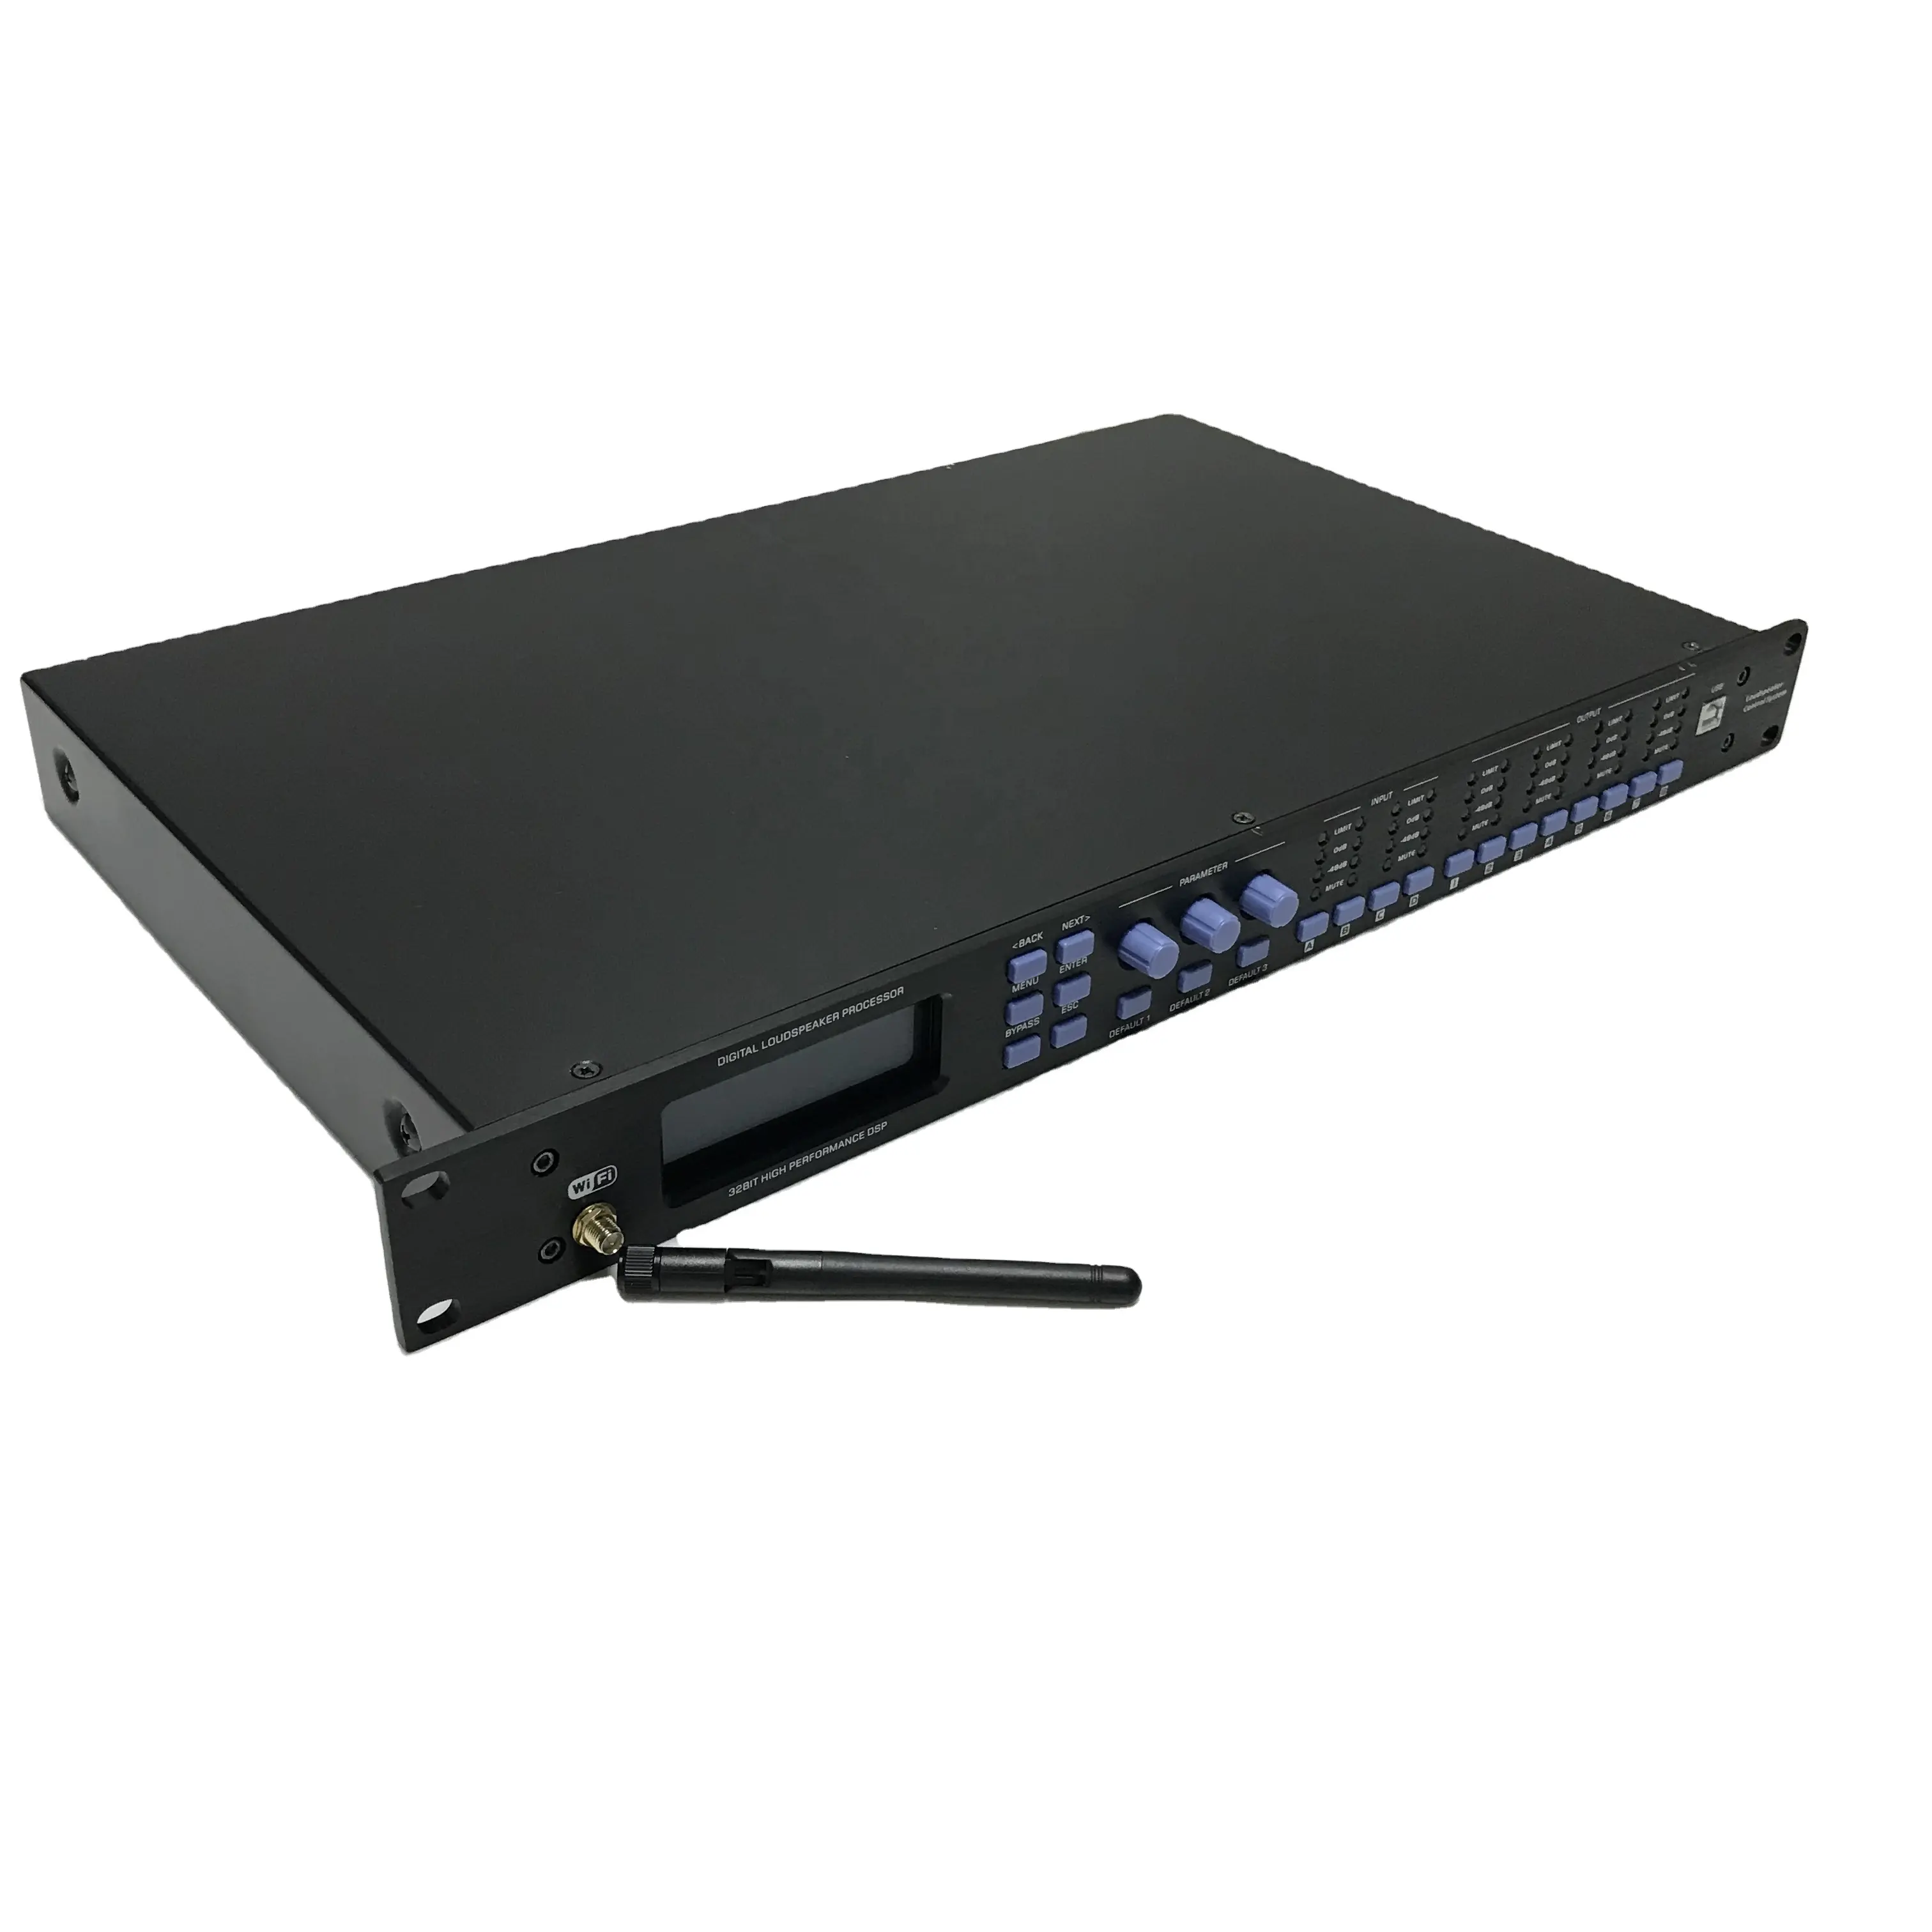 Cinow पावर Sequencer डीजे मिक्सर डीएसपी कक्षा डी 230v डिजिटल स्पीकर प्रोसेसर 4 इनपुट 8 उत्पादन